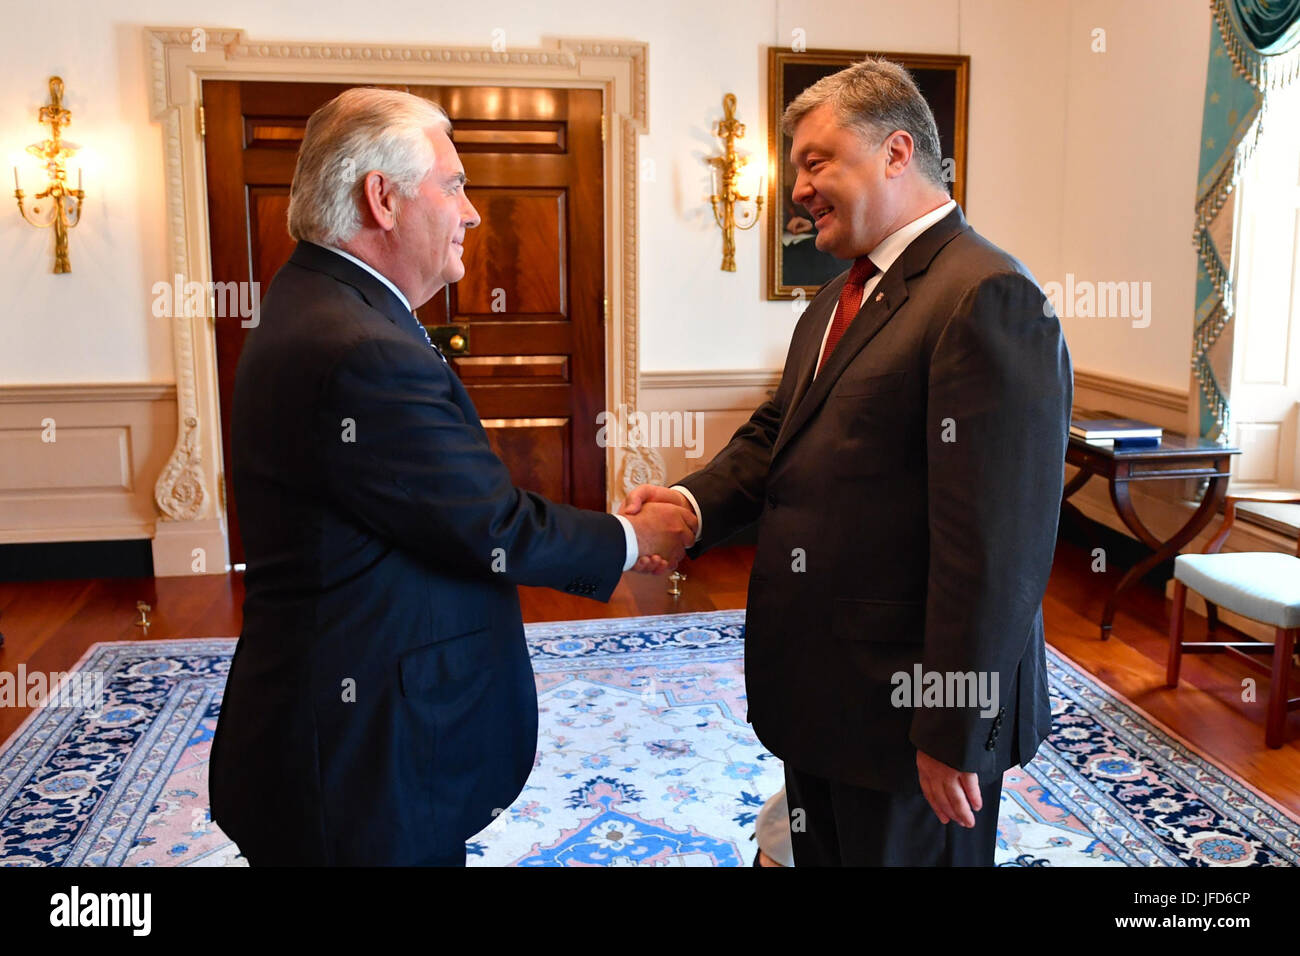 La secrétaire d'État des États-Unis, Rex Tillerson accueille le président ukrainien Porochenko avant leur réunion bilatérale au département d'État des États-Unis à Washington, D.C., le 20 juin 2017. Banque D'Images